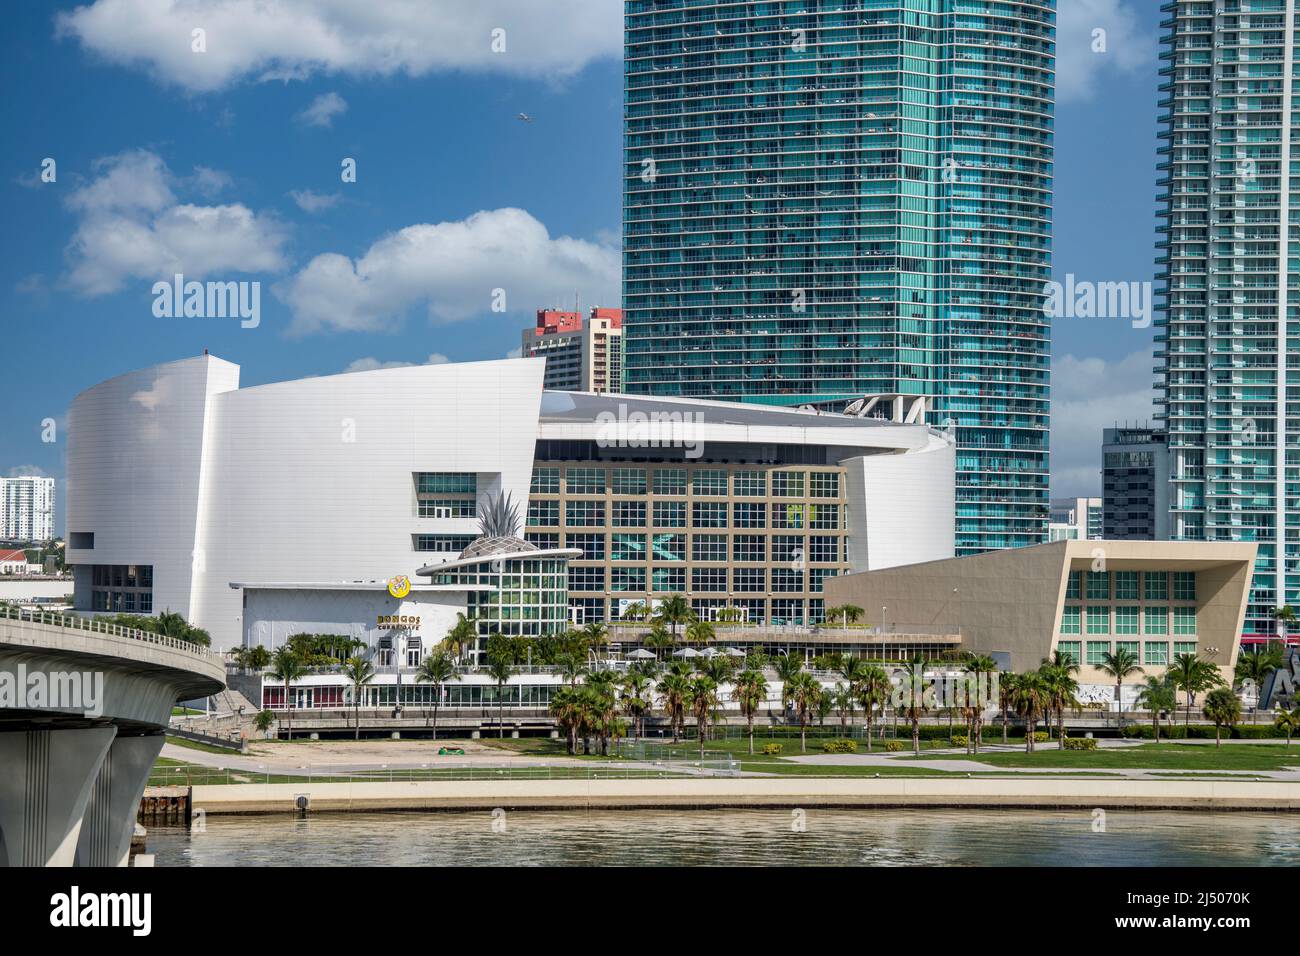 Die Waterfront American Airlines Arena, die Heimat der Miami Heat, vom Deck eines Kreuzfahrtschiffs aus gesehen, das von Miami, Florida, abfährt. Stockfoto